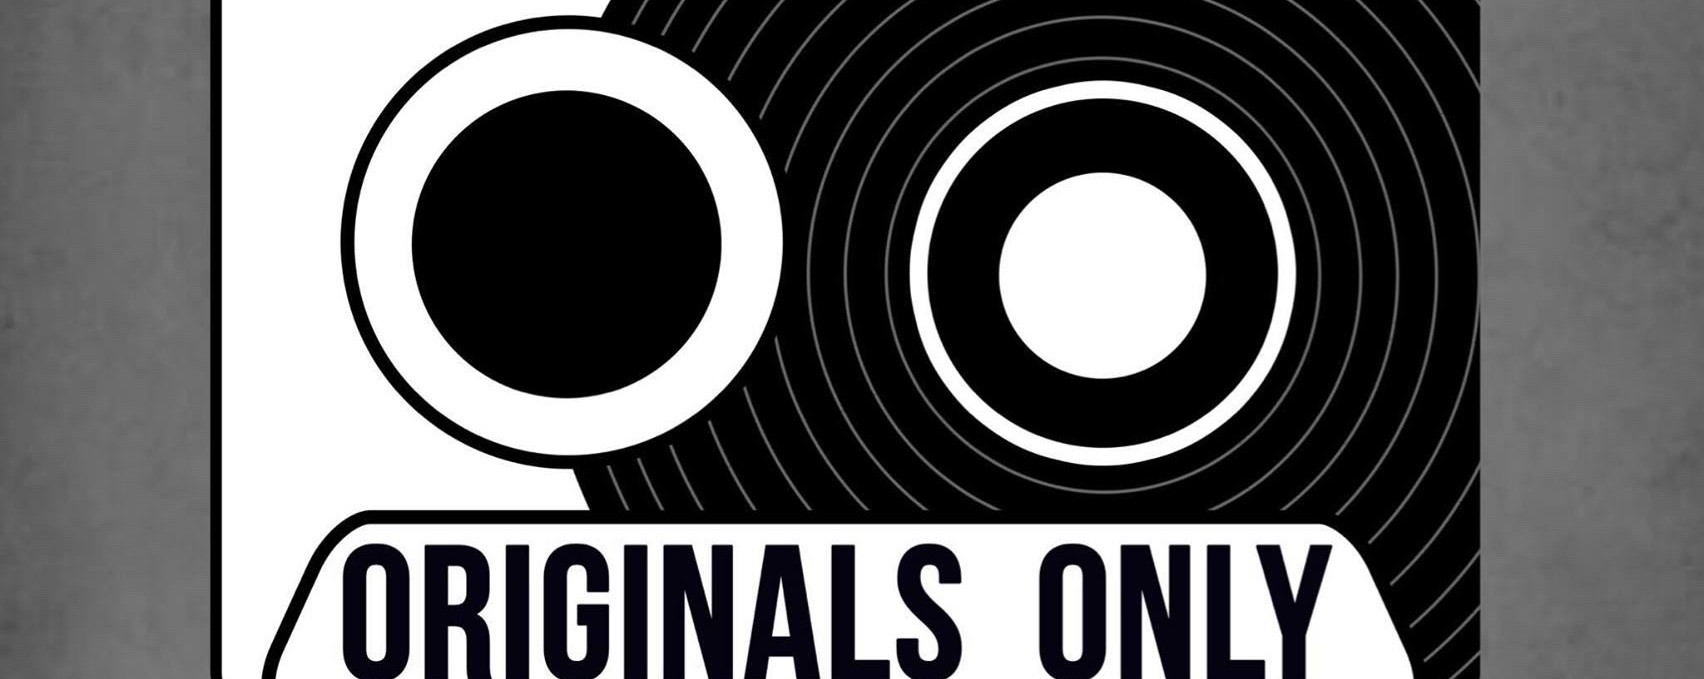 Oo: Originals Only